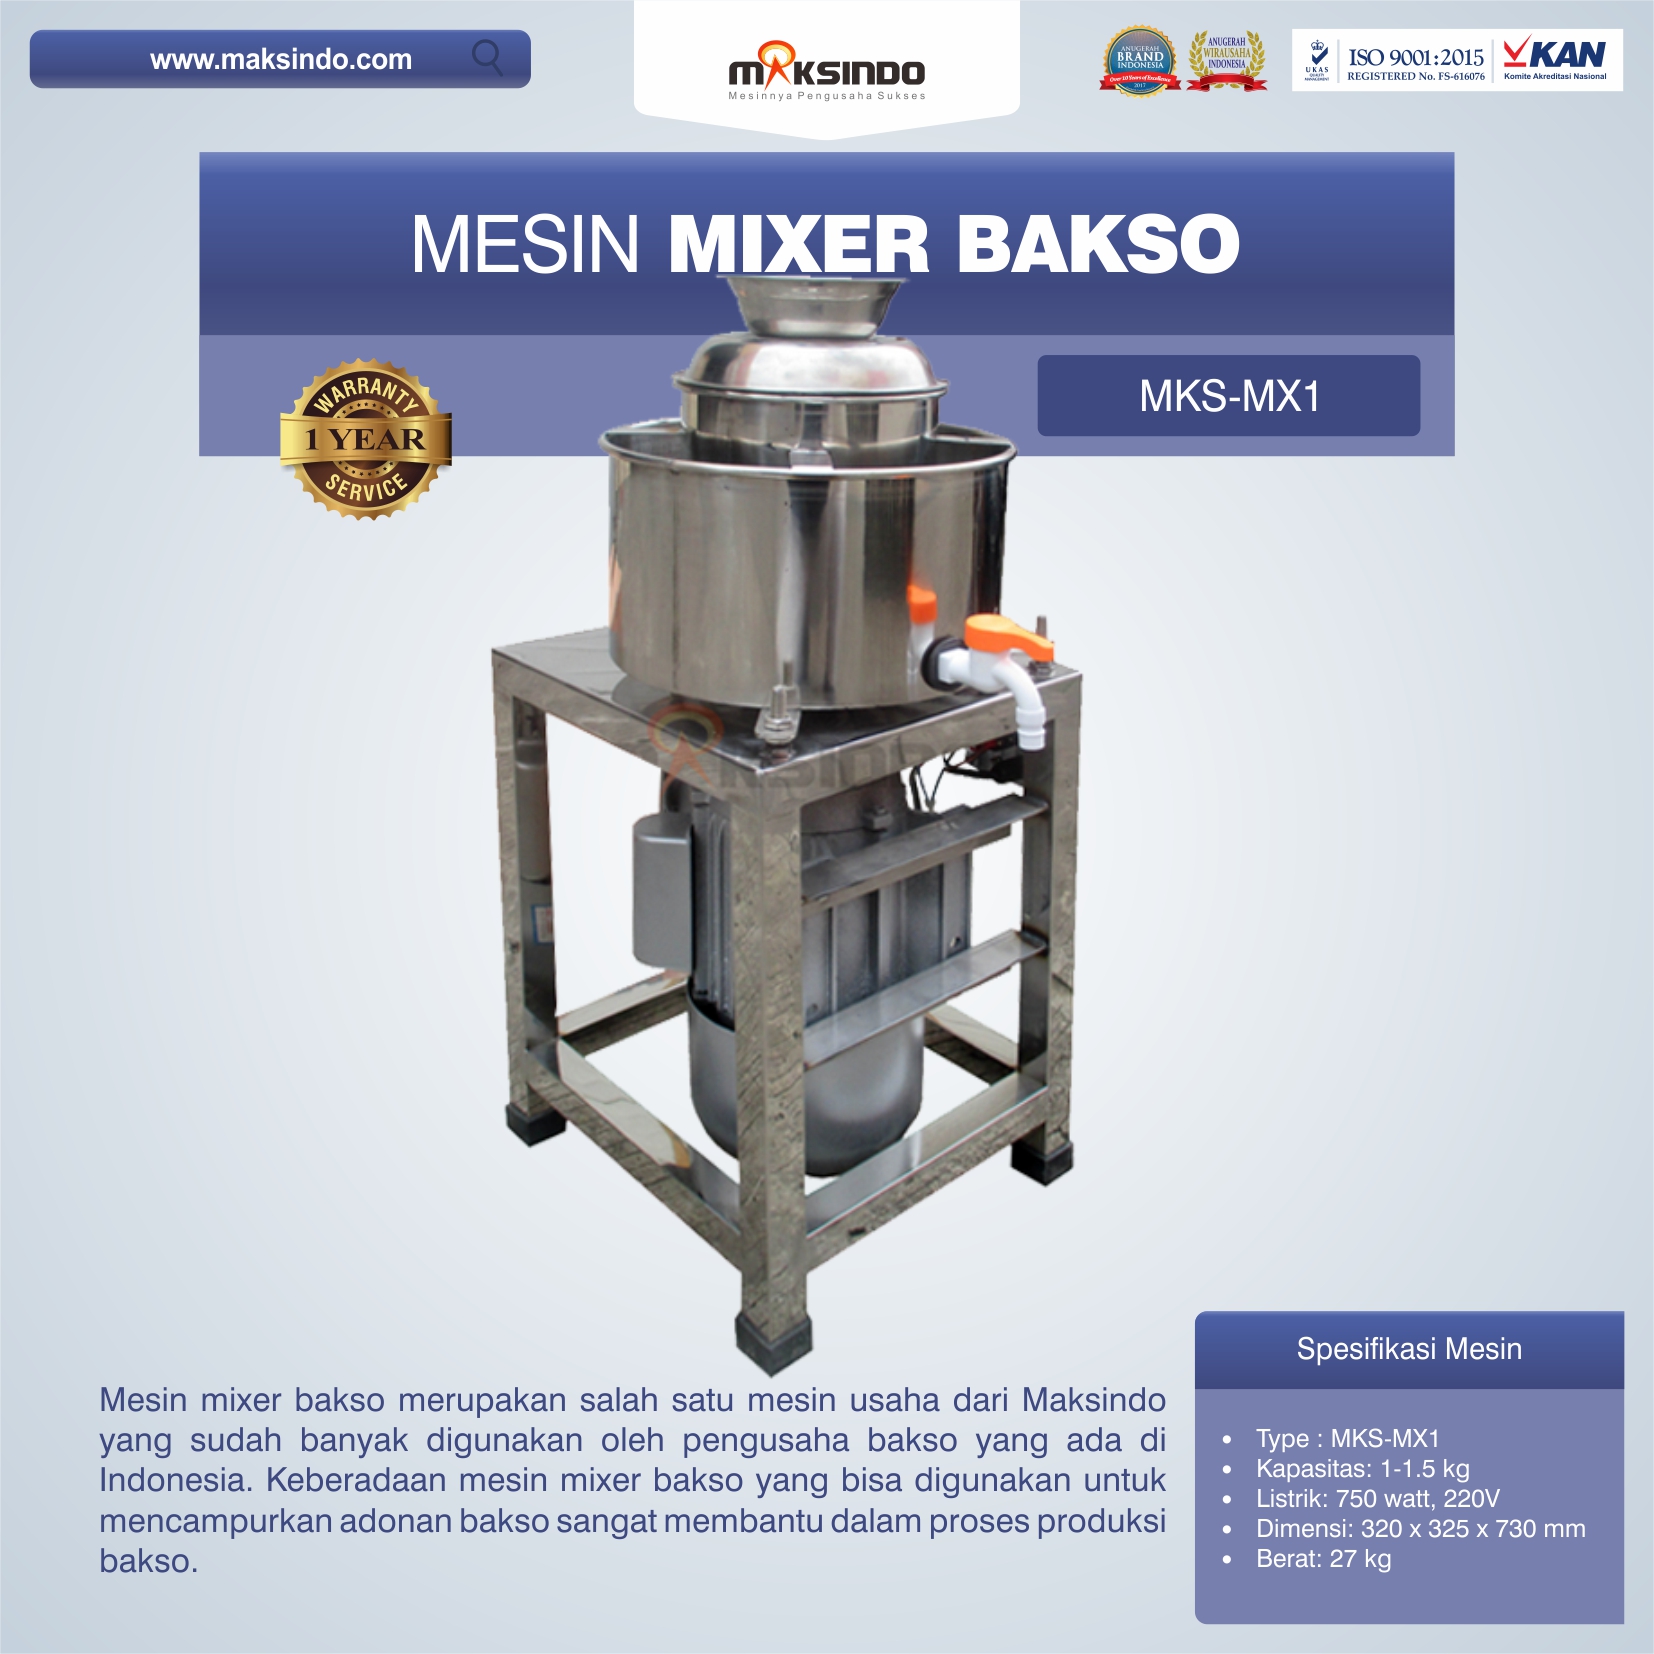 Jual Mesin Mixer Bakso MKS-MX1 di Pekanbaru